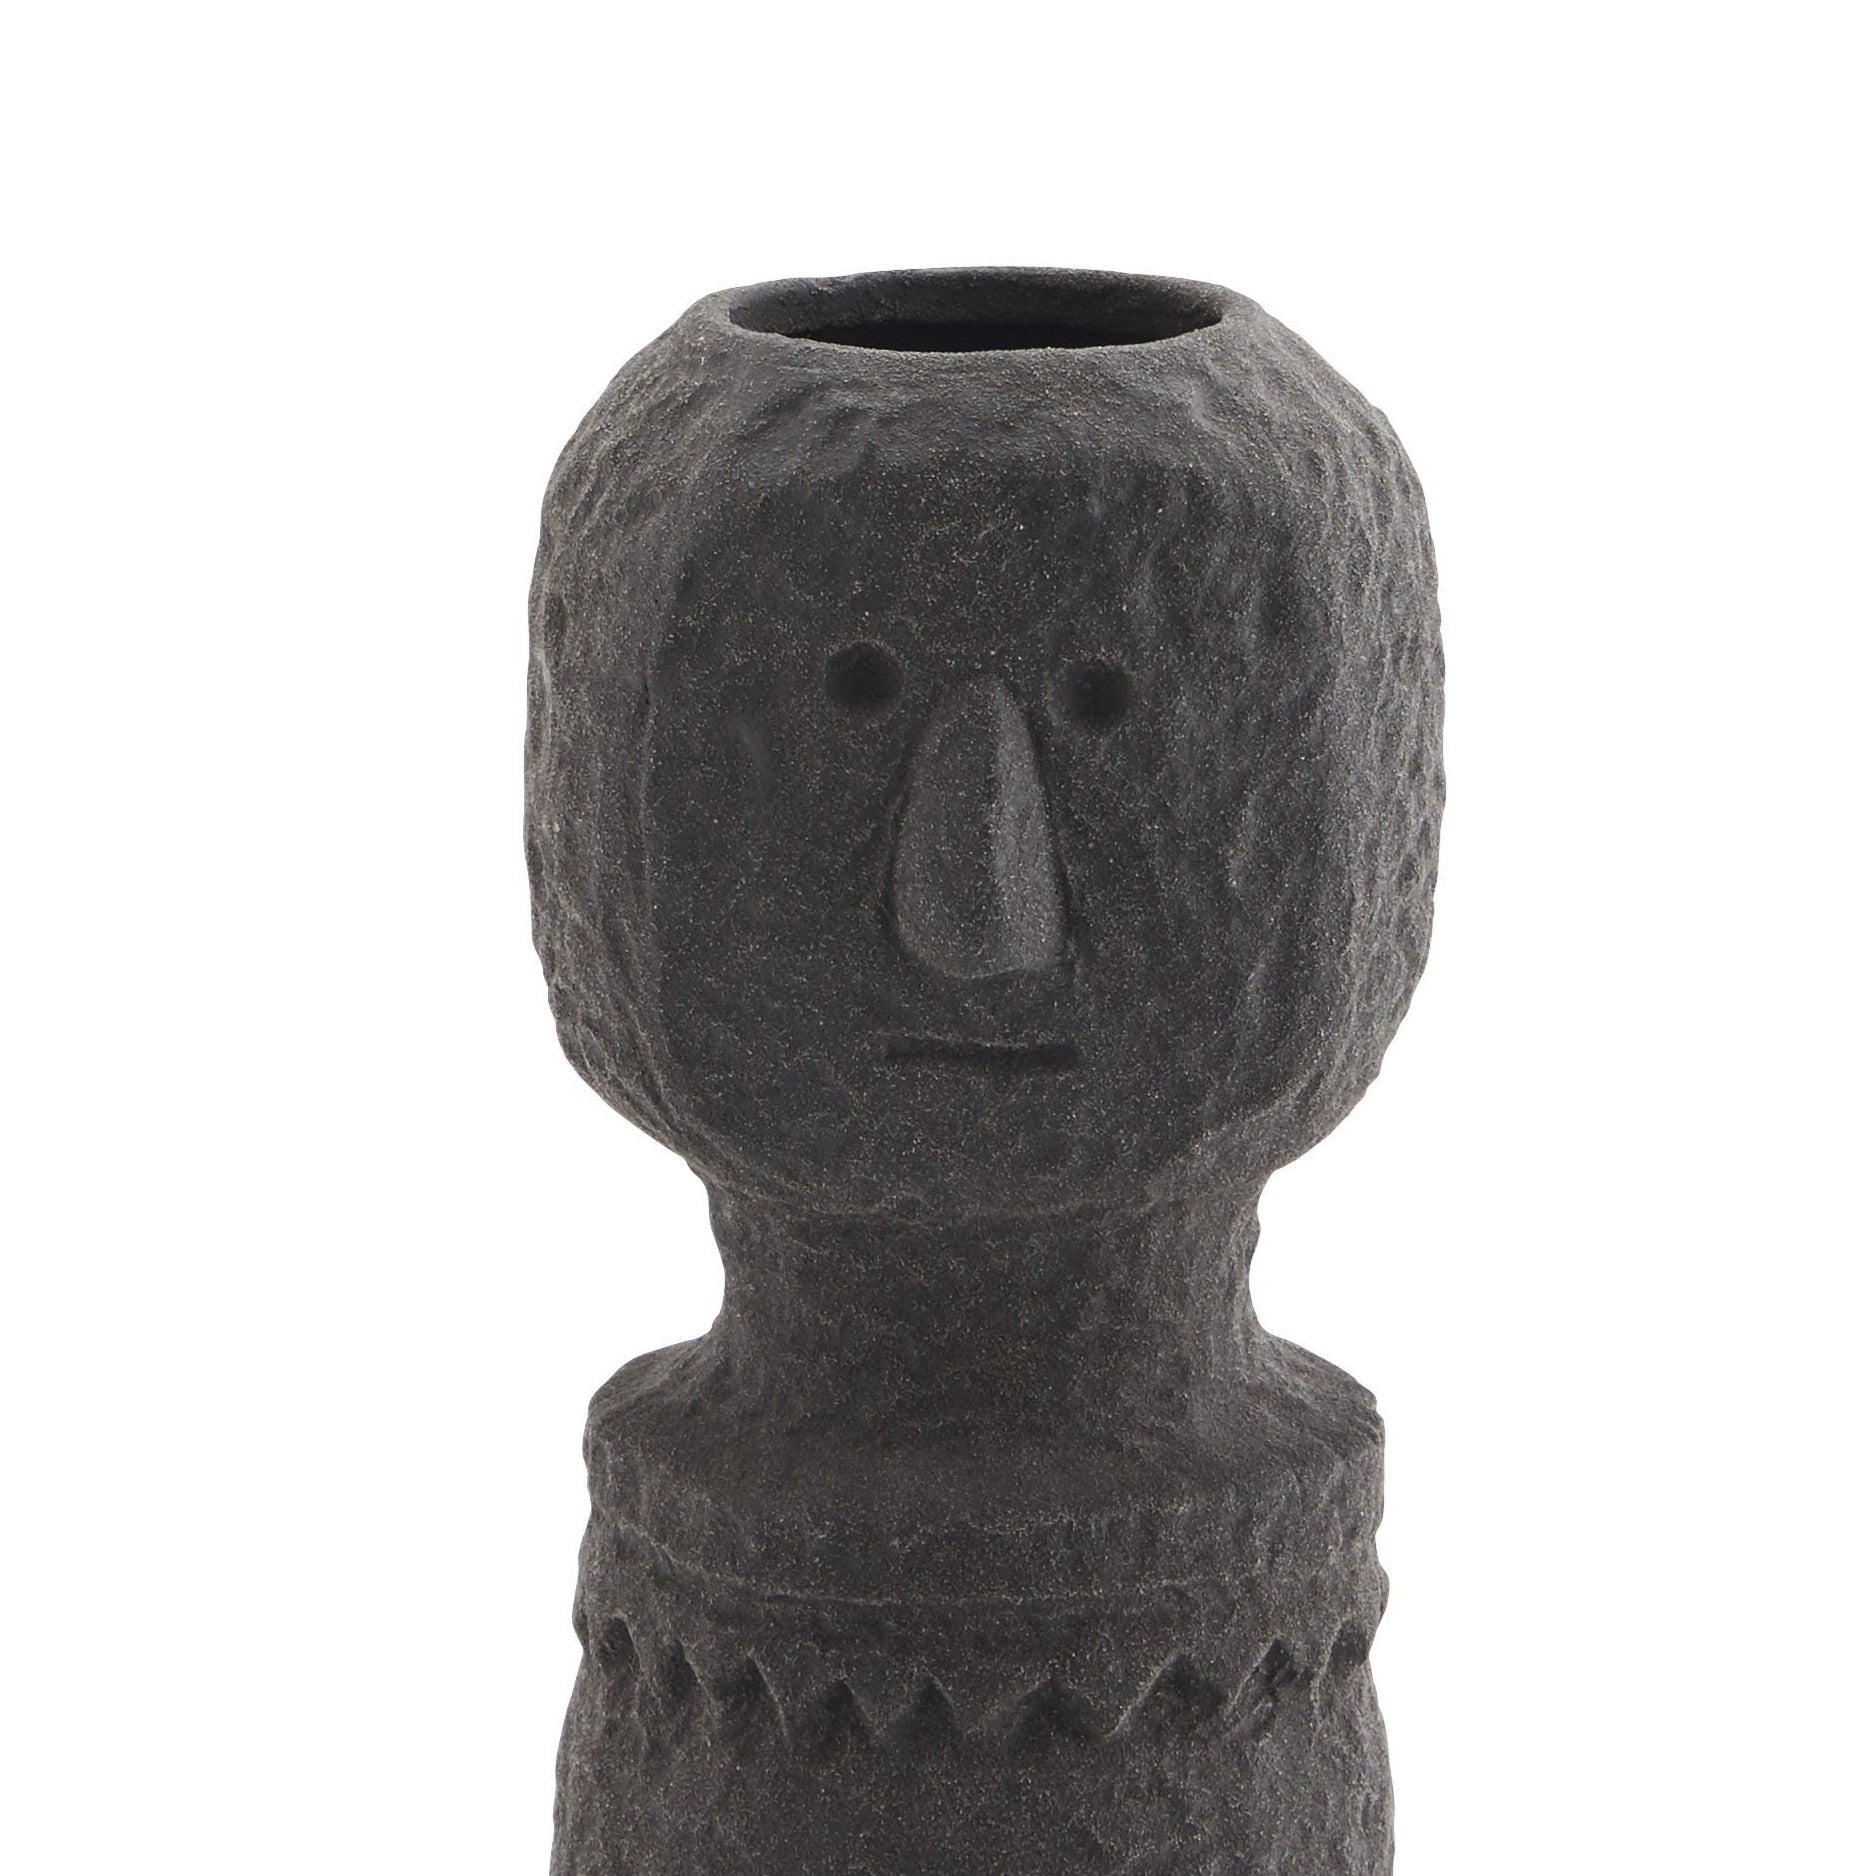 Stoneware vase TRIBE black, Madam Stoltz, Eye on Design